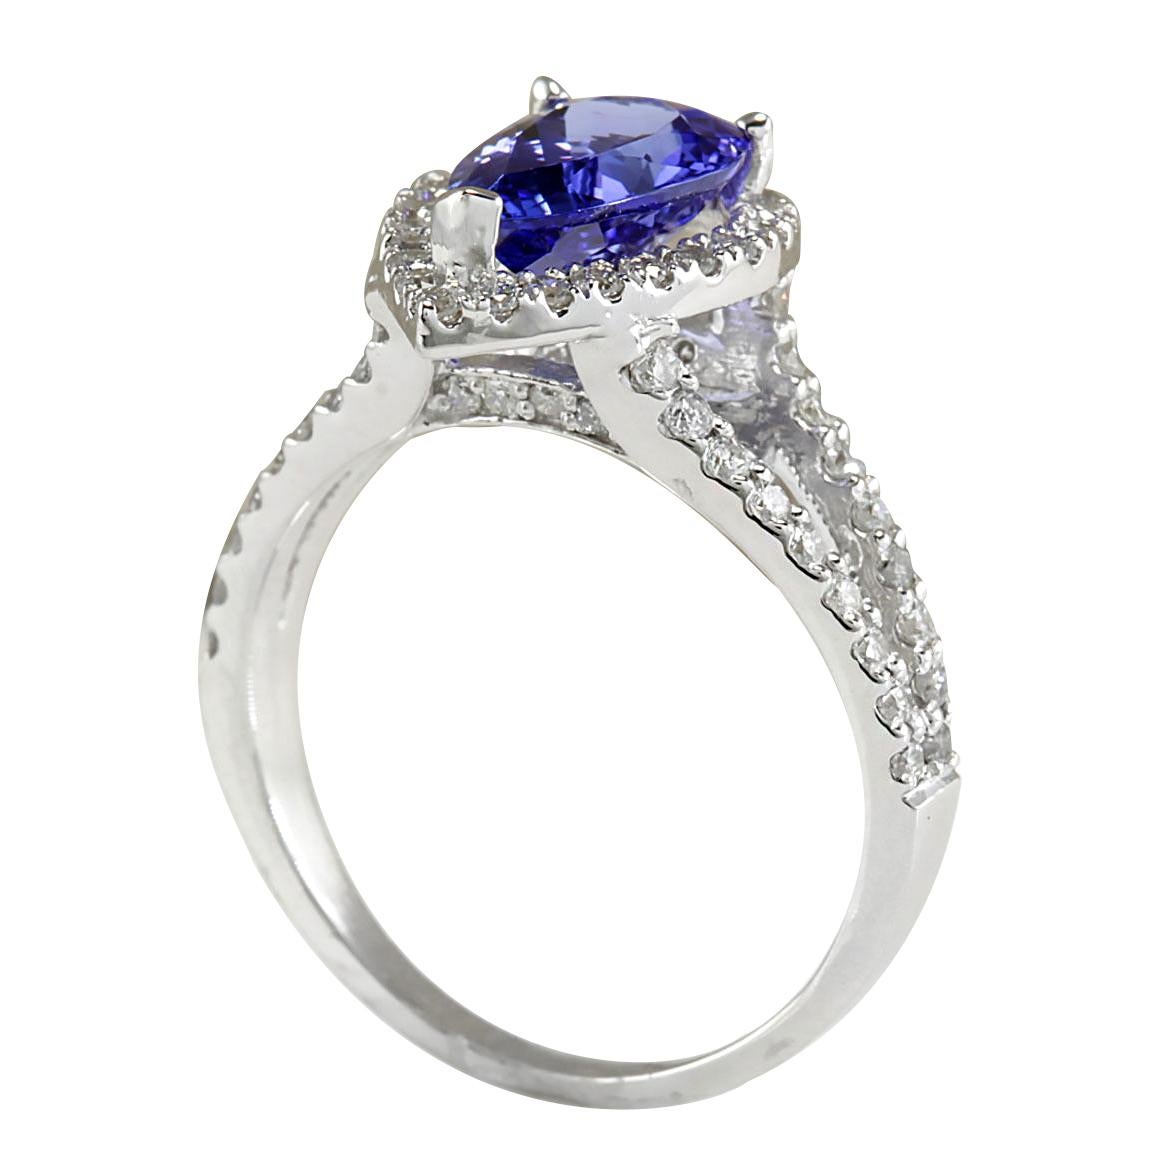 2.80 Carat Natural Tanzanite 14 Karat White Gold Diamond Ring
Stamped: 14K White Gold
Total Ring Weight: 3.5 Grams
Total Natural Tanzanite Weight is 1.80 Carat (Measures: 11.00x7.00 mm)
Color: Blue
Total Natural Diamond Weight is 1.00 Carat
Color: